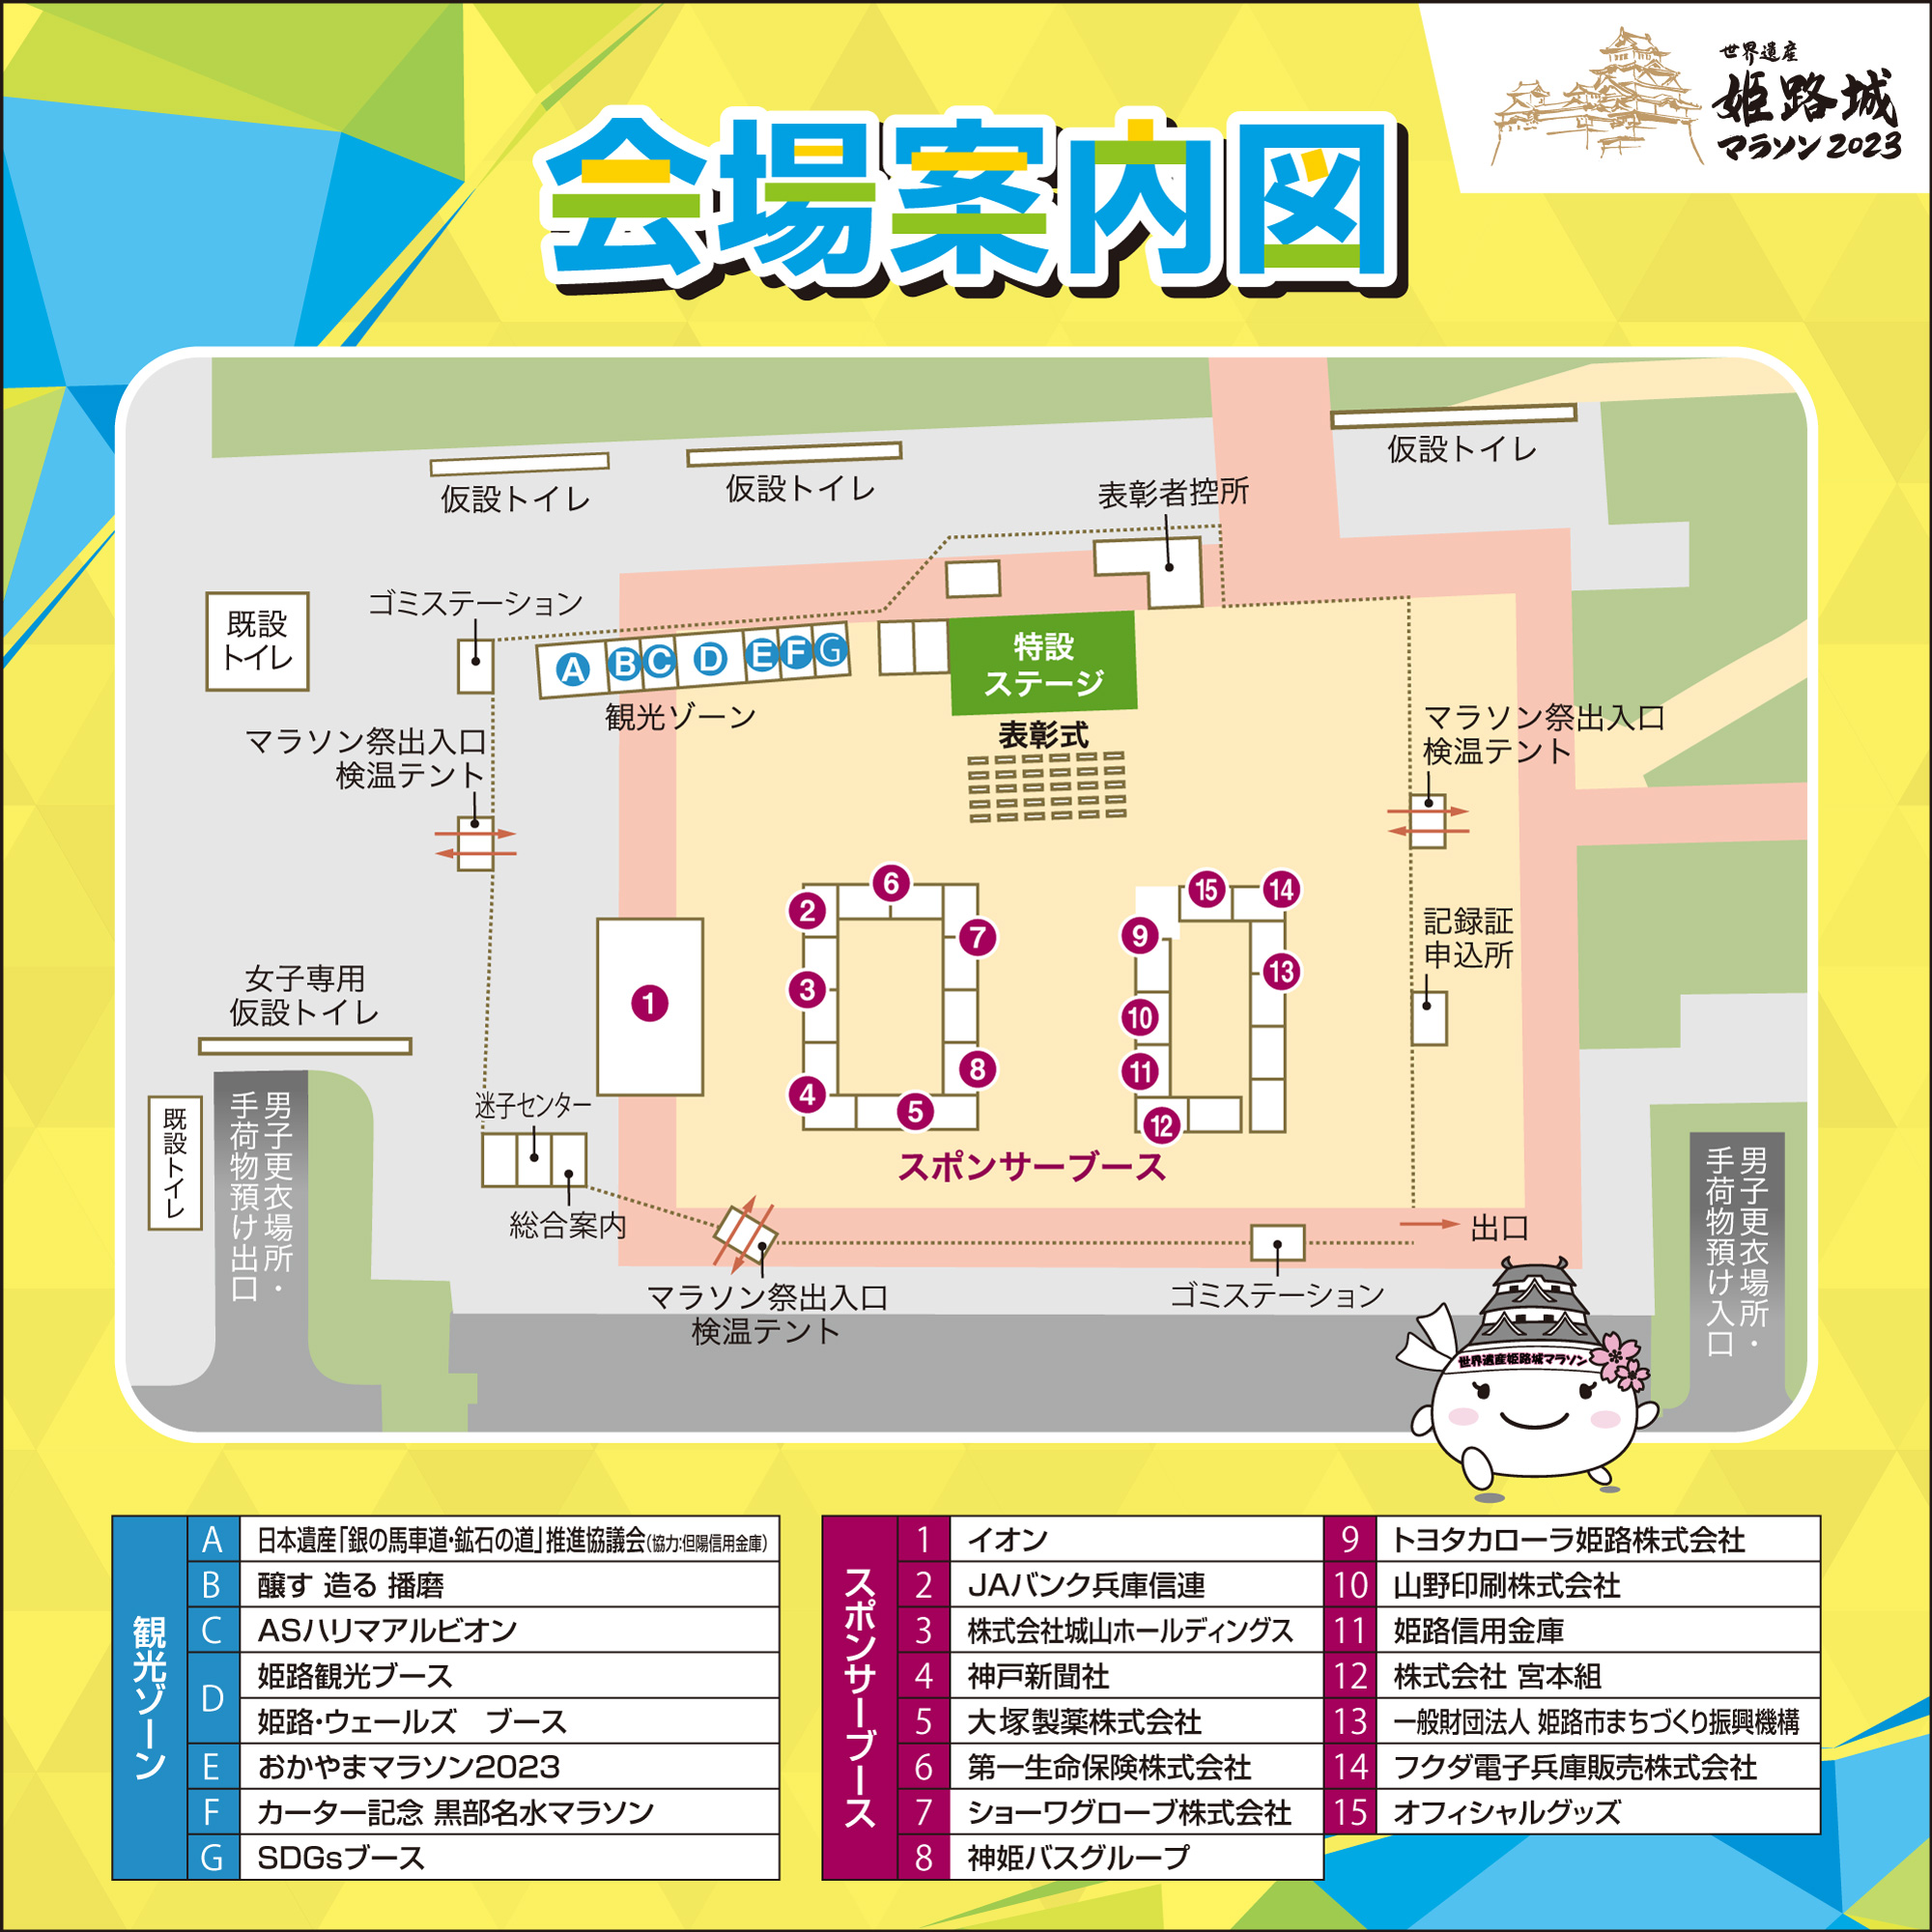 世界遺産姫路城マラソン祭 会場案内図